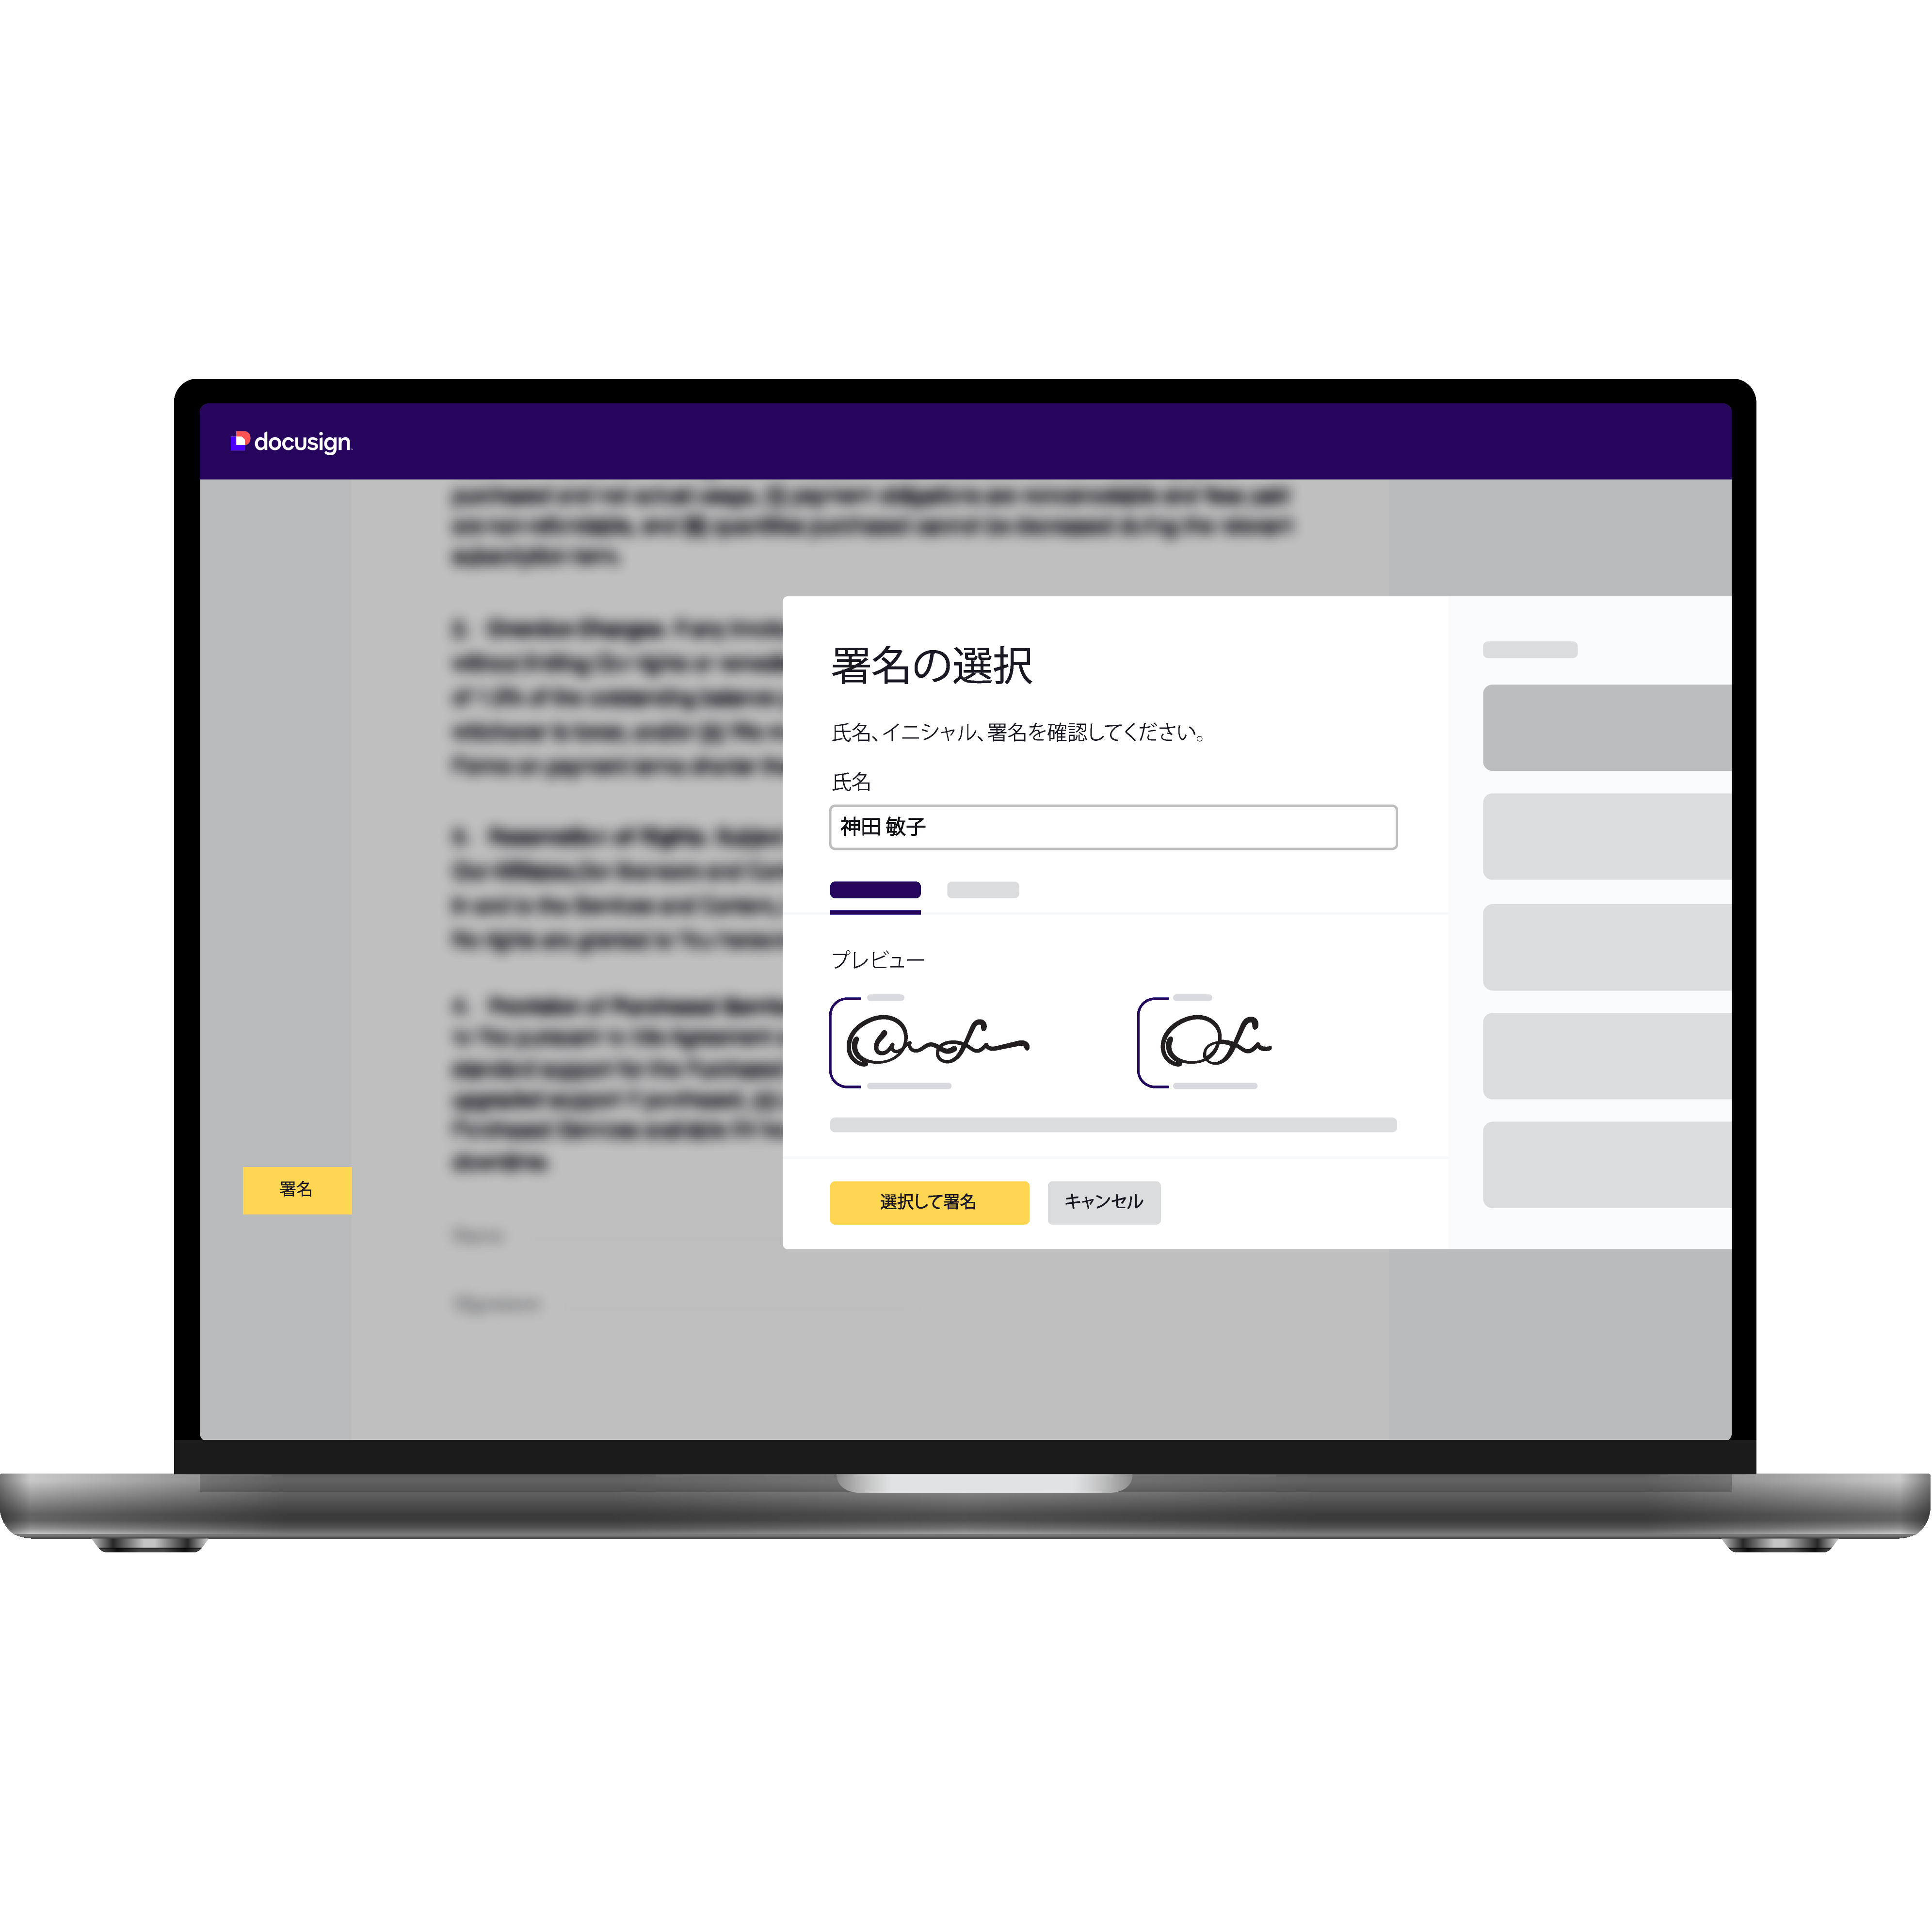 書類へのユーザーの署名を表示するノートパソコン